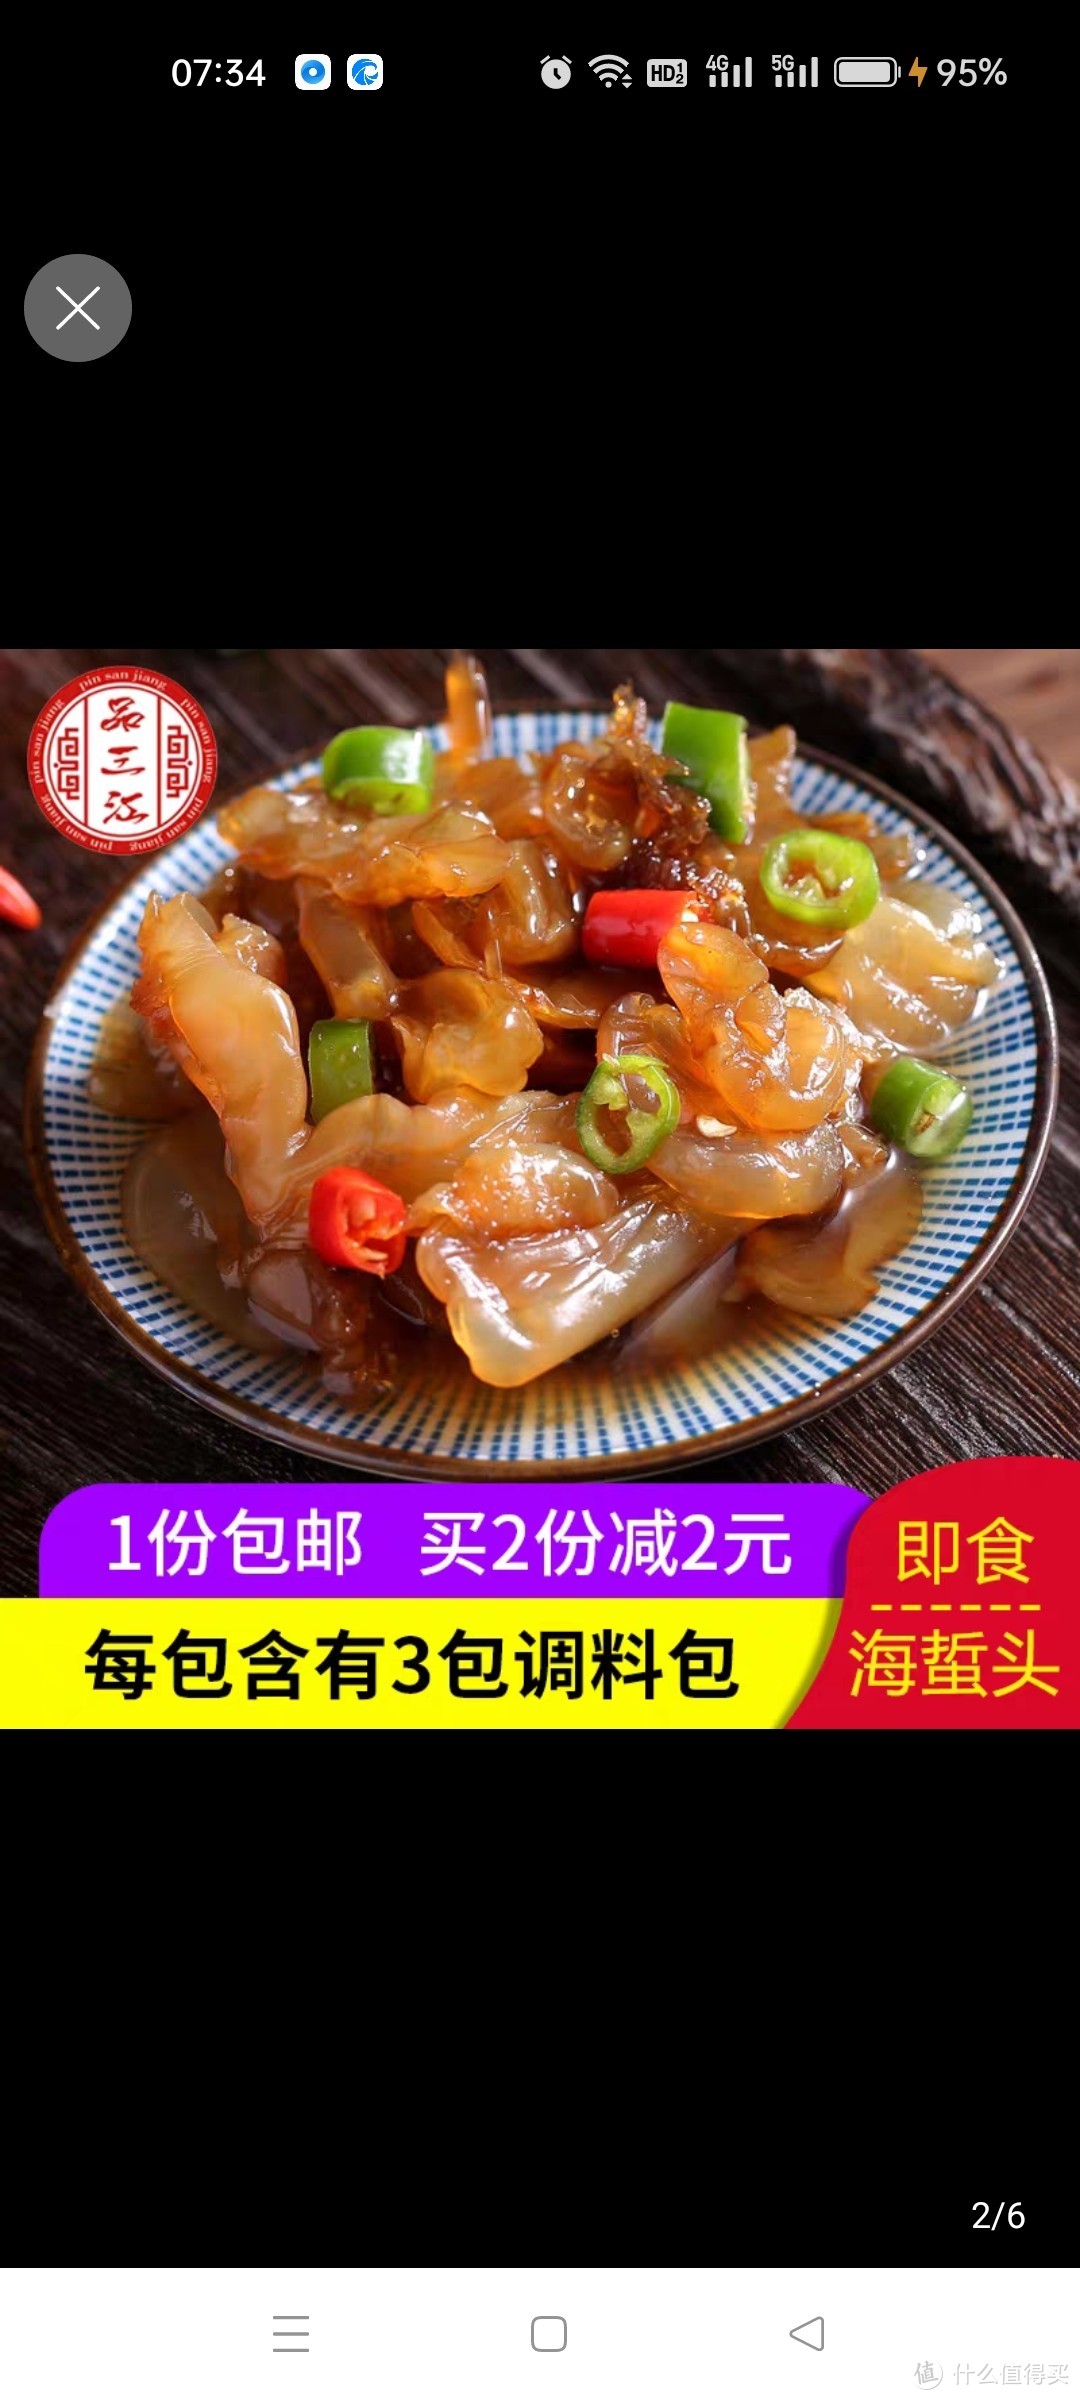 品三江即食海蜇头 海蜇丝海蜇皮宁波海鲜 凉菜冷菜 宁波产 220g